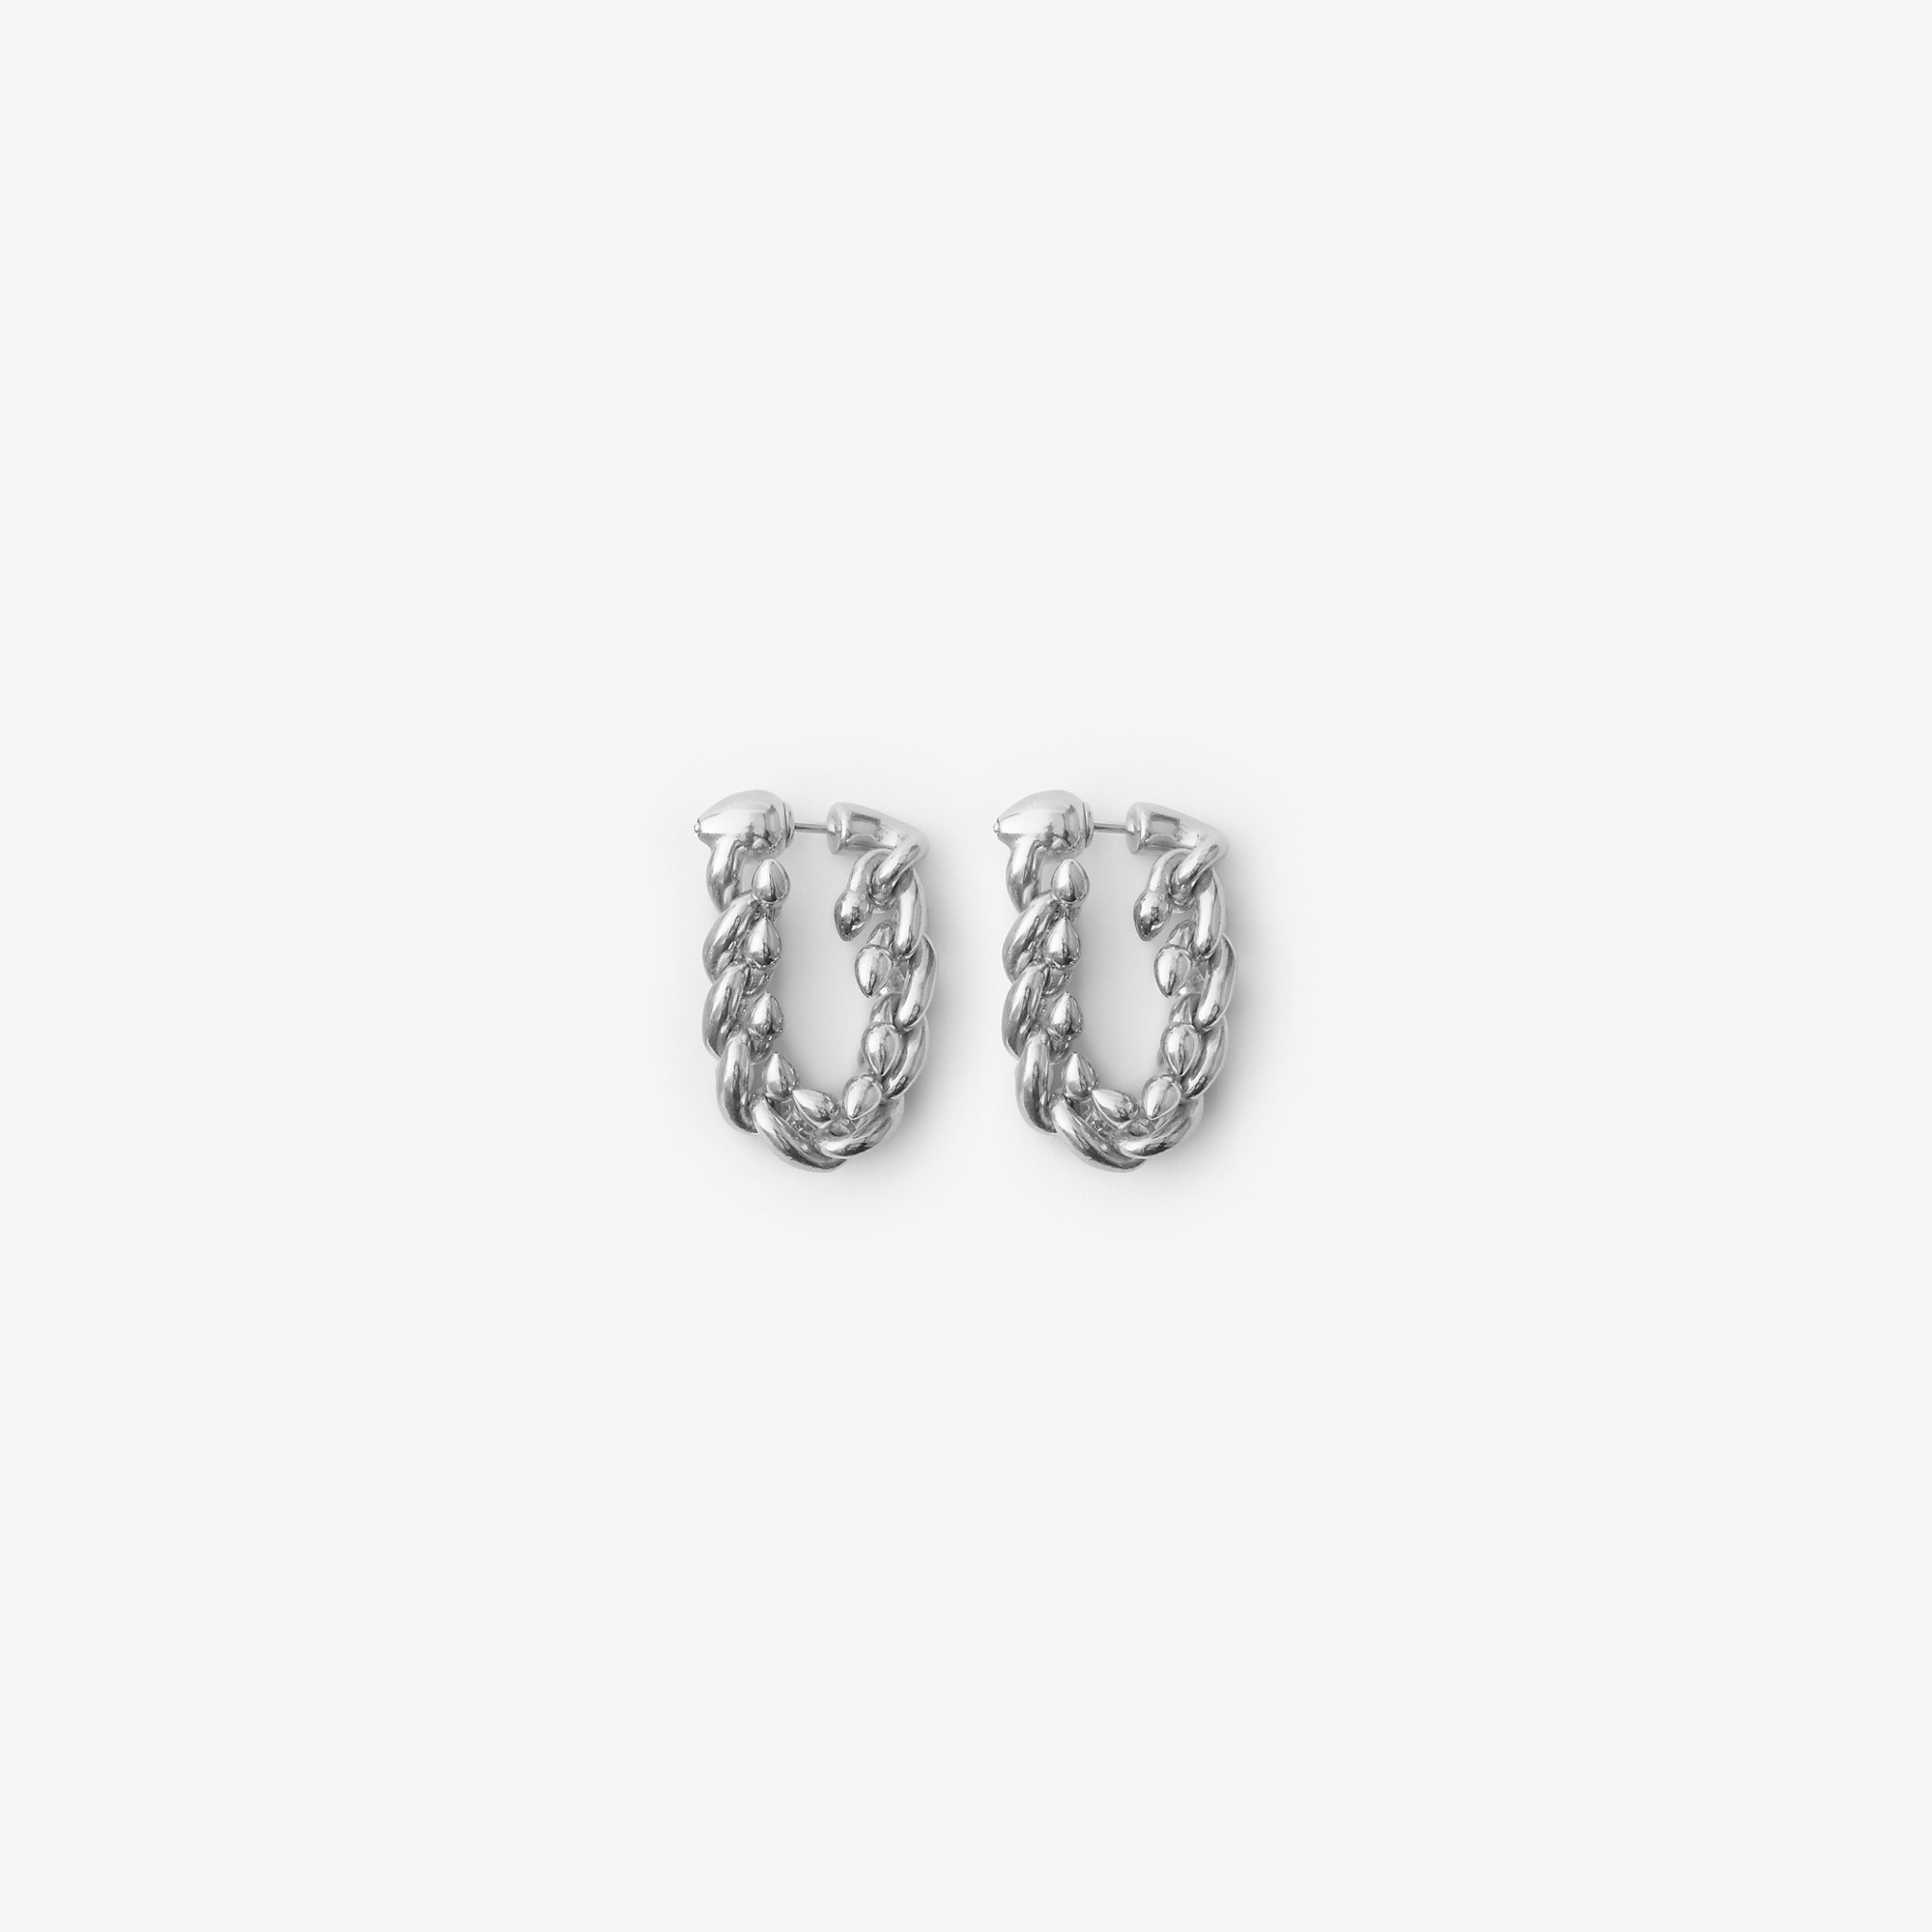 Silver Spear Chain Earrings - 3